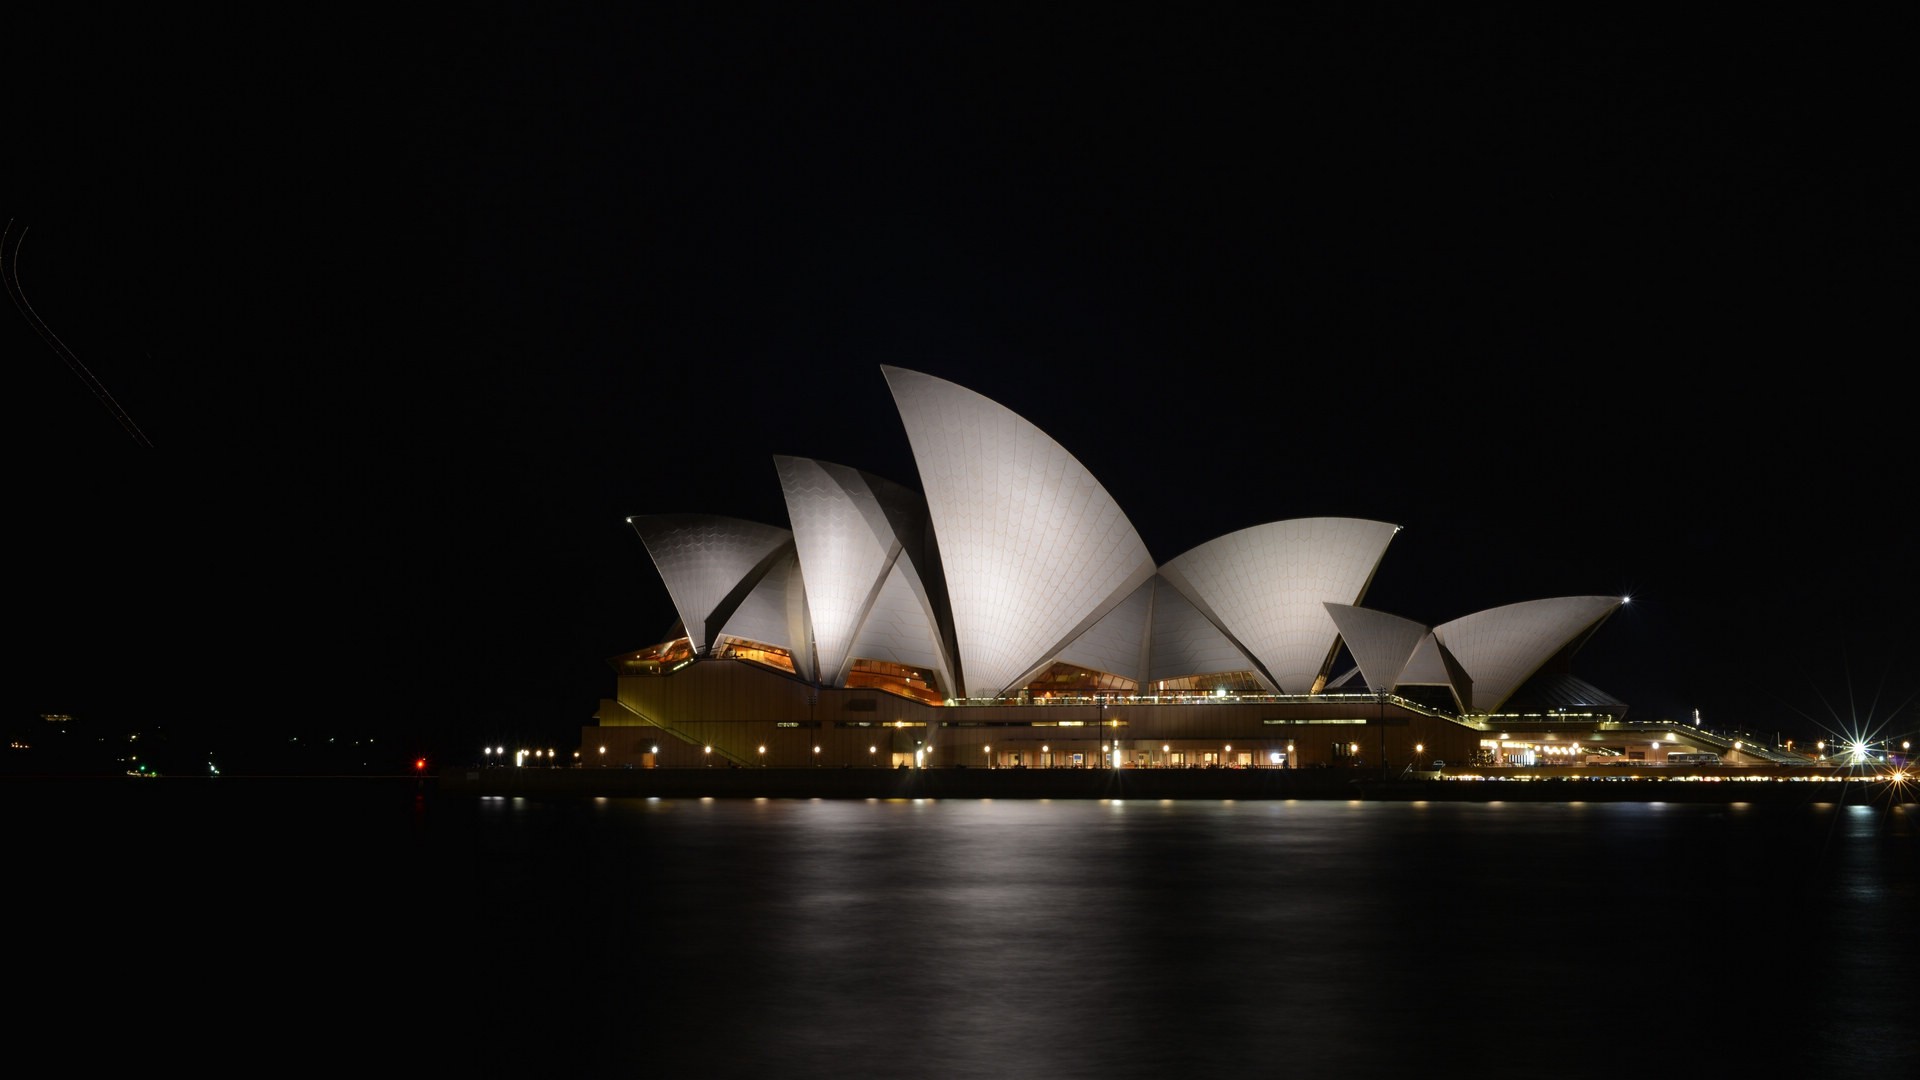 悉尼歌剧院图片大全 澳大利亚悉尼歌剧院图片(8)